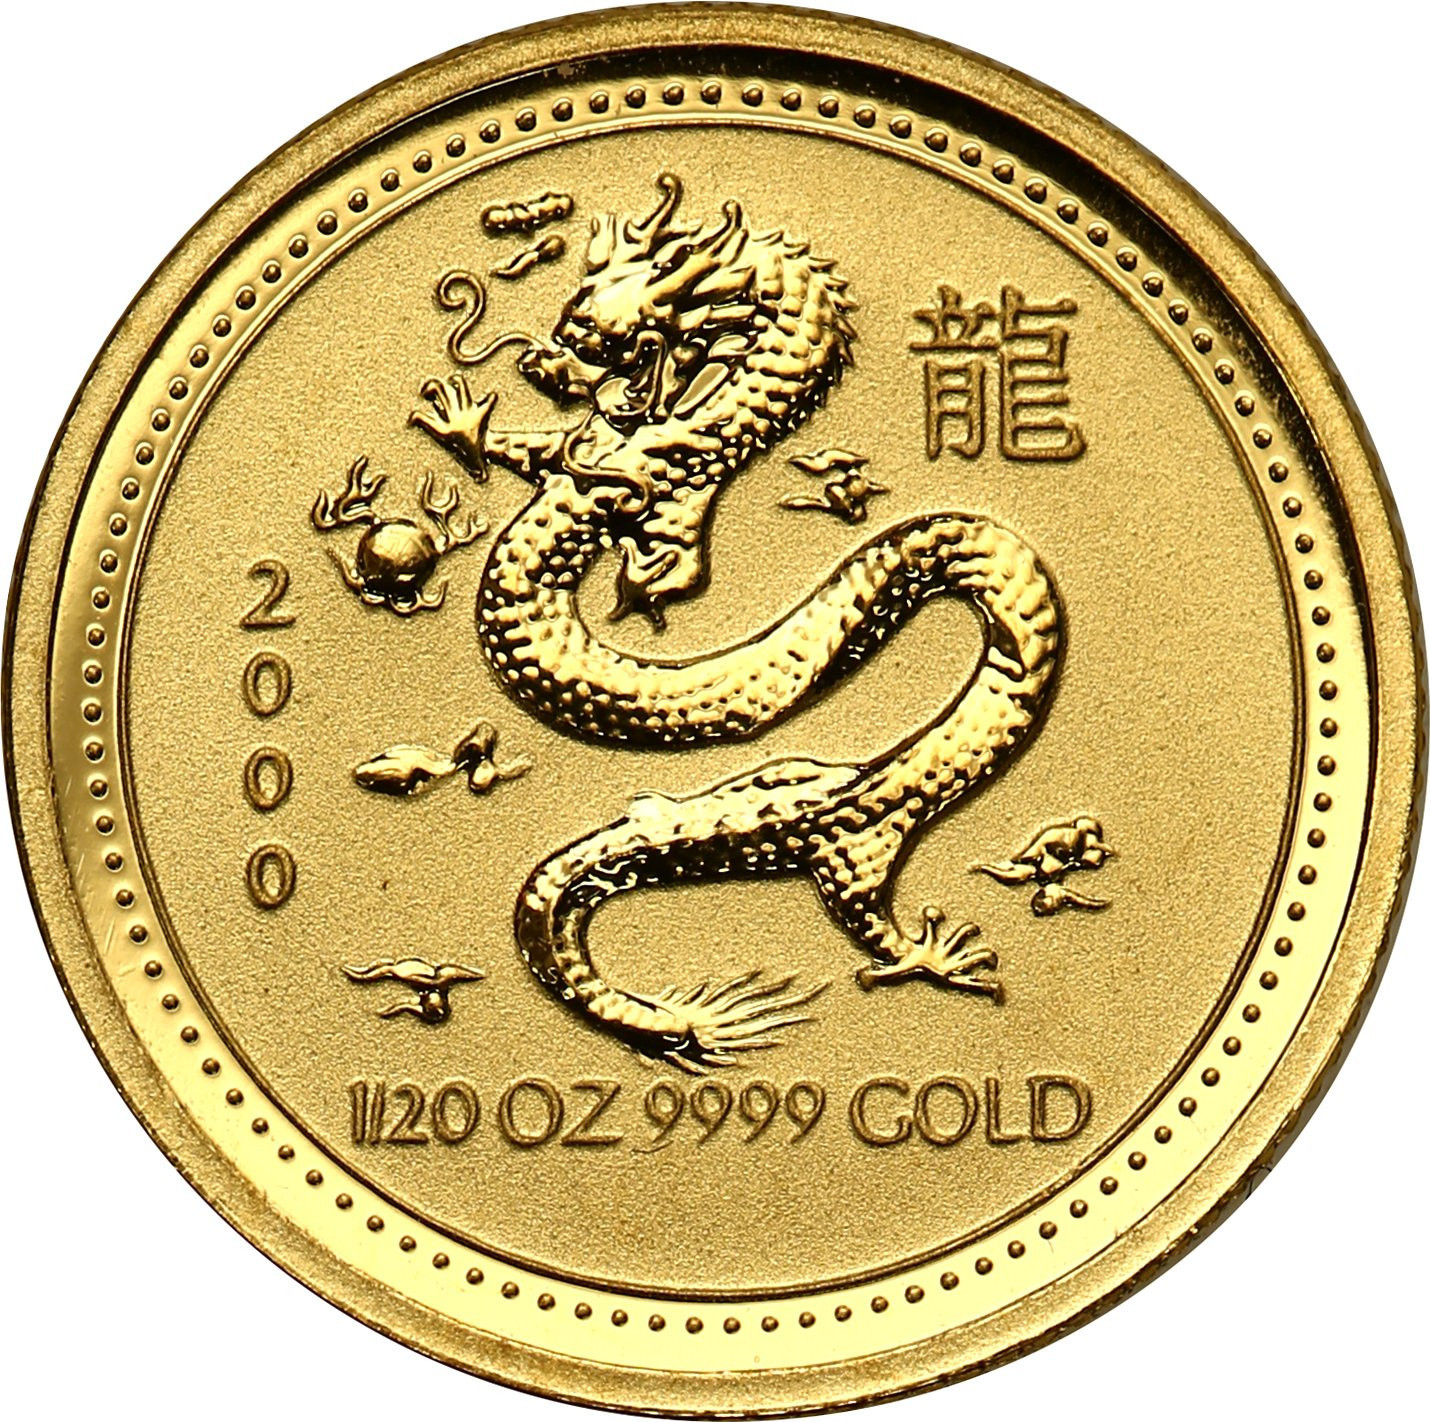 Australia. Złote 5 dolarów 2000 - ROK SMOKA  - 1/20 uncji złota